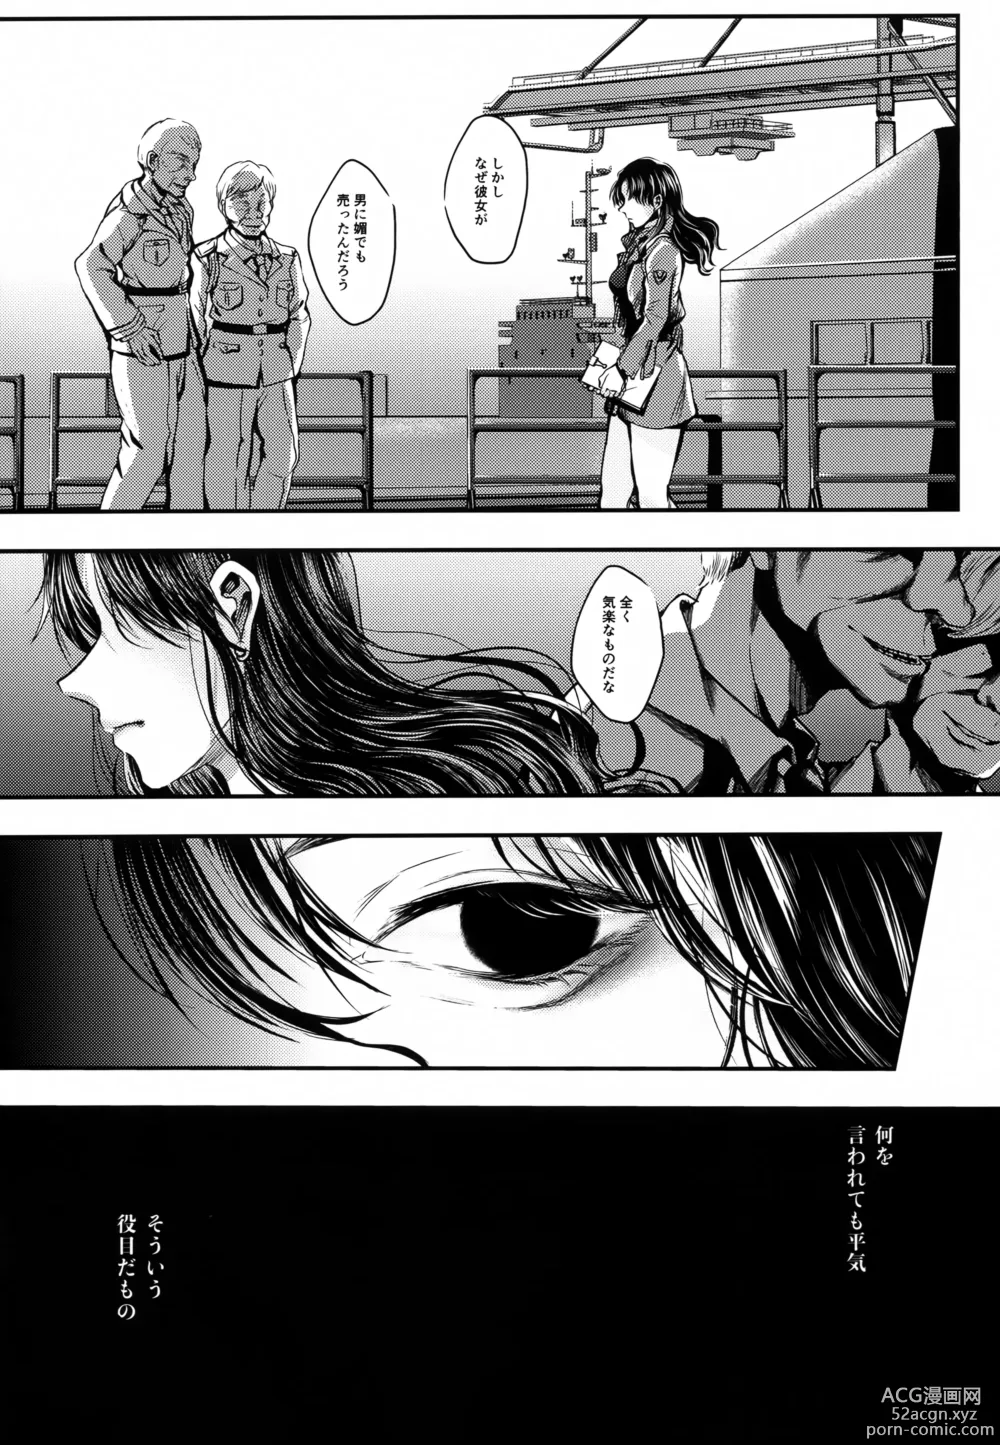 Page 3 of doujinshi SHIEN